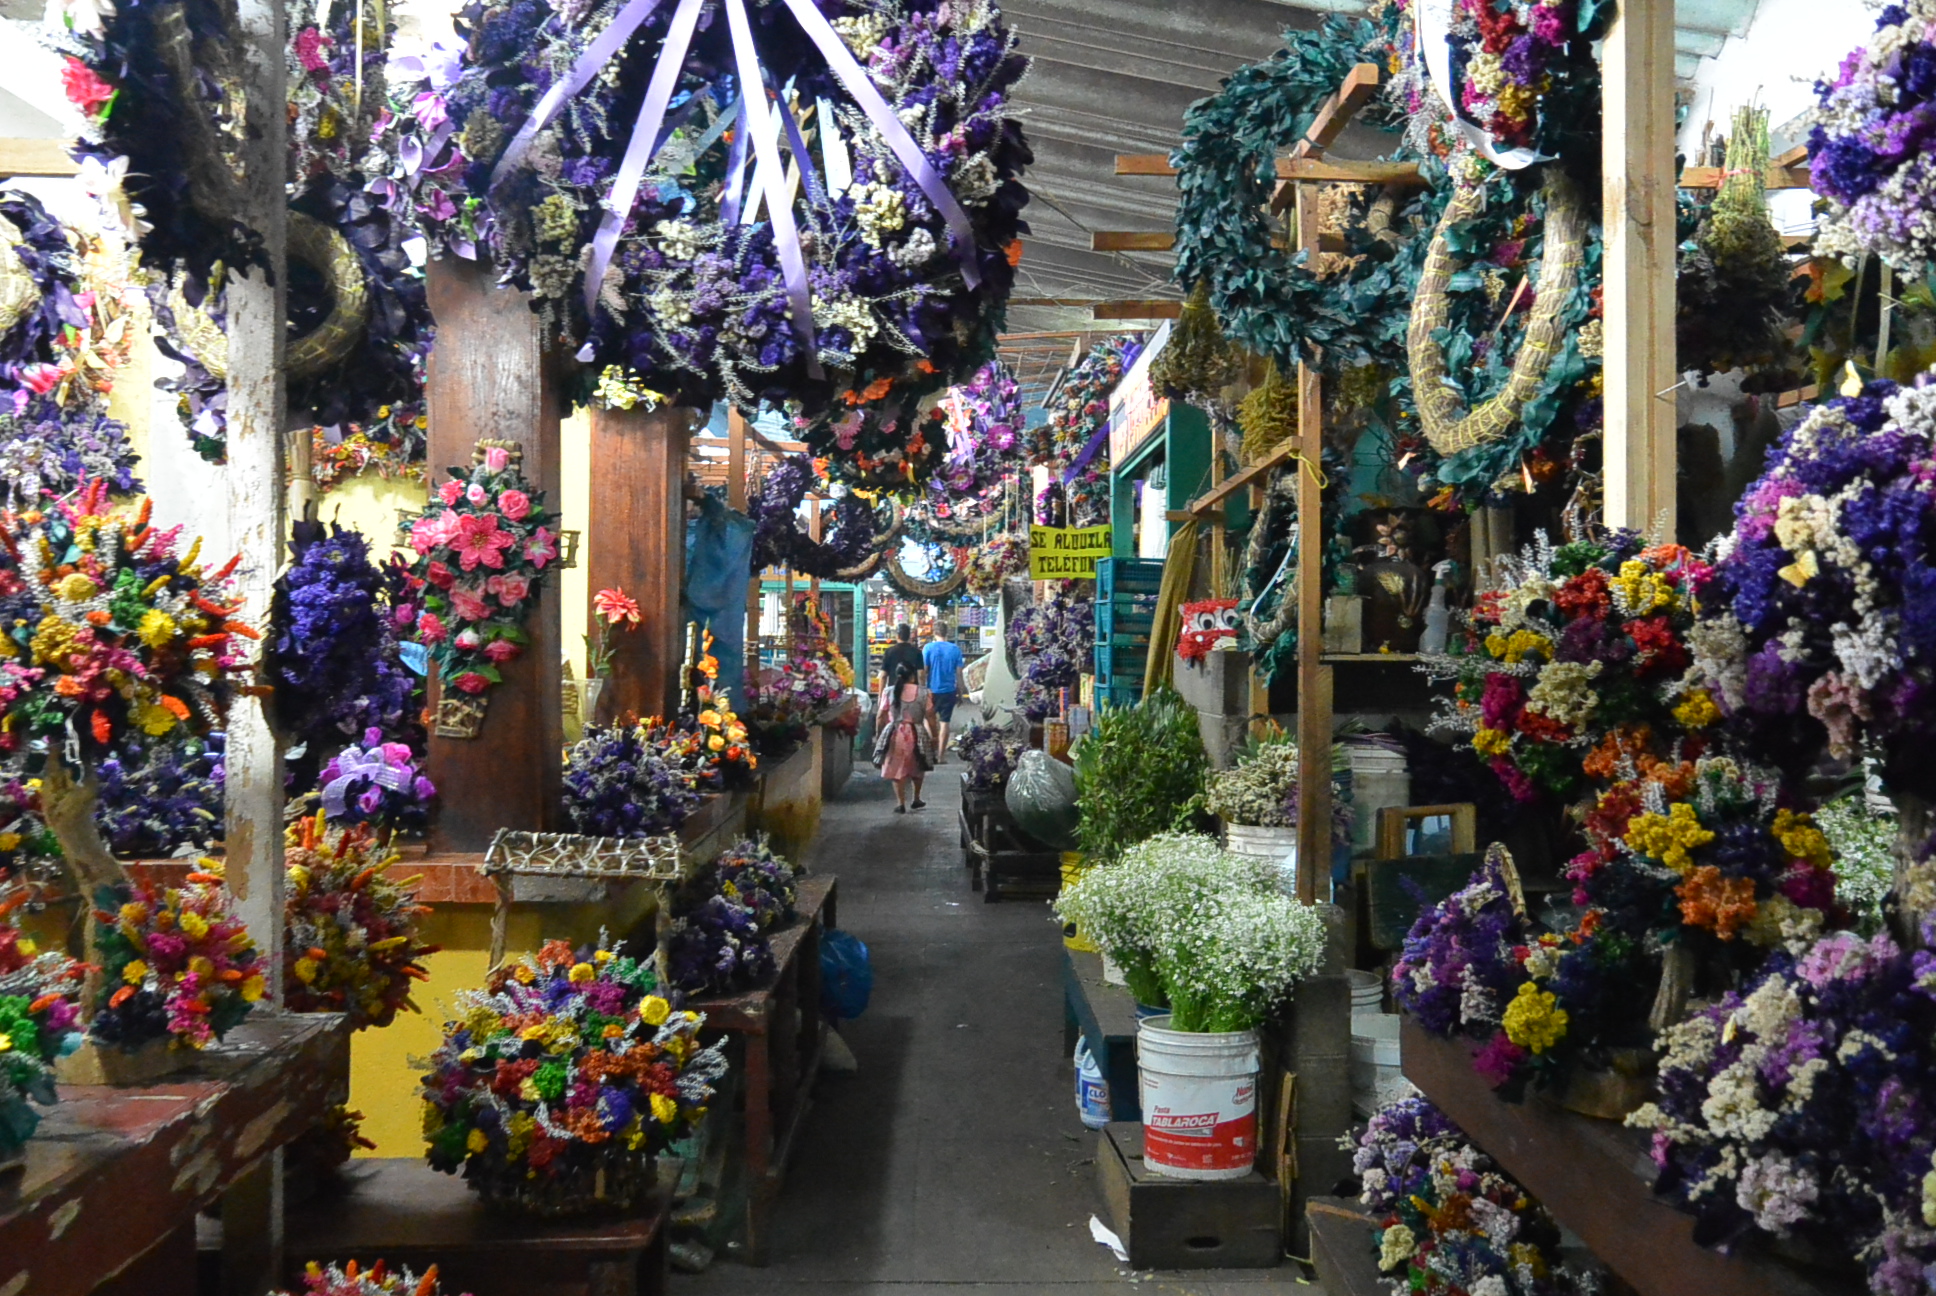 Der Blumenmarkt, ein kleiner Teil des gesamten Marktes